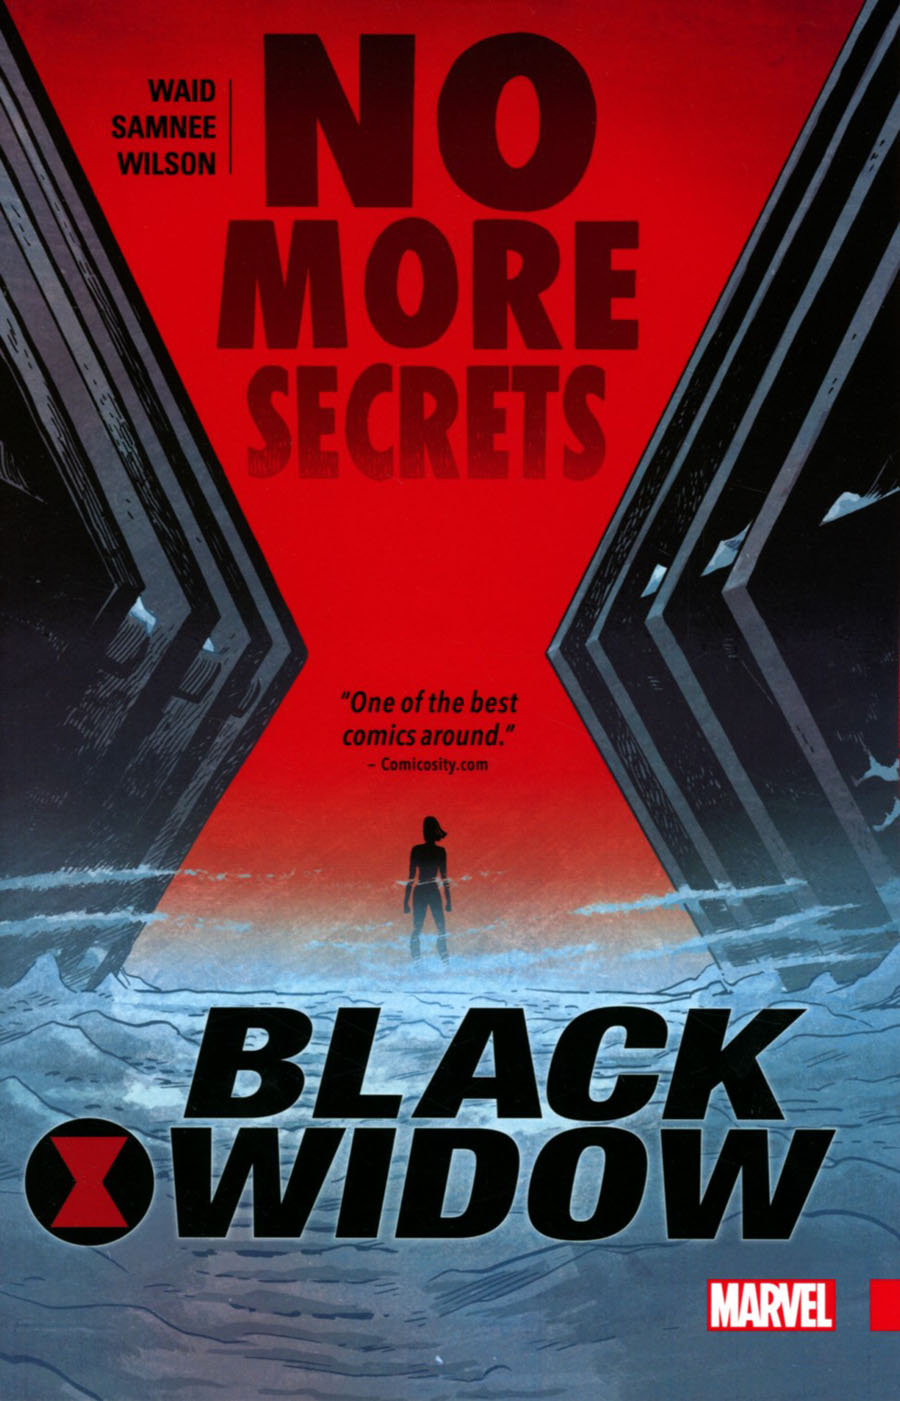 Black Widow Vol 2 No More Secrets TP